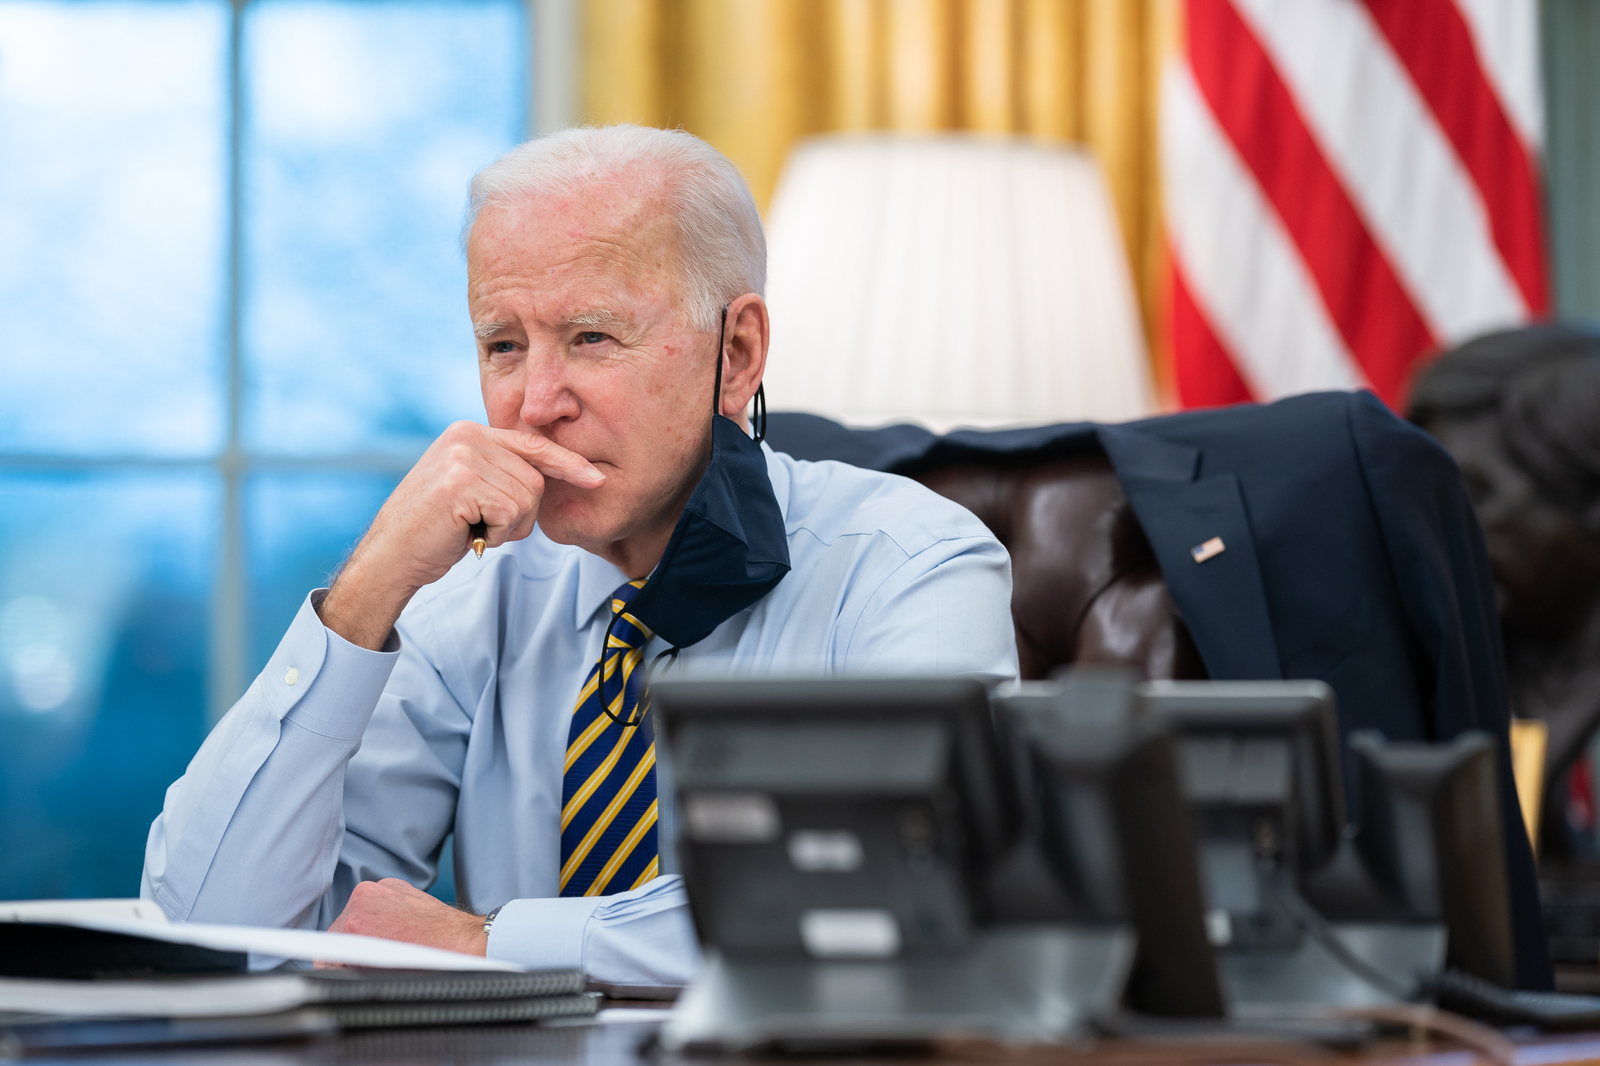 Fegyvertartás szigorításával kapcsolatos intézkedéseket jelentett be Joe Biden